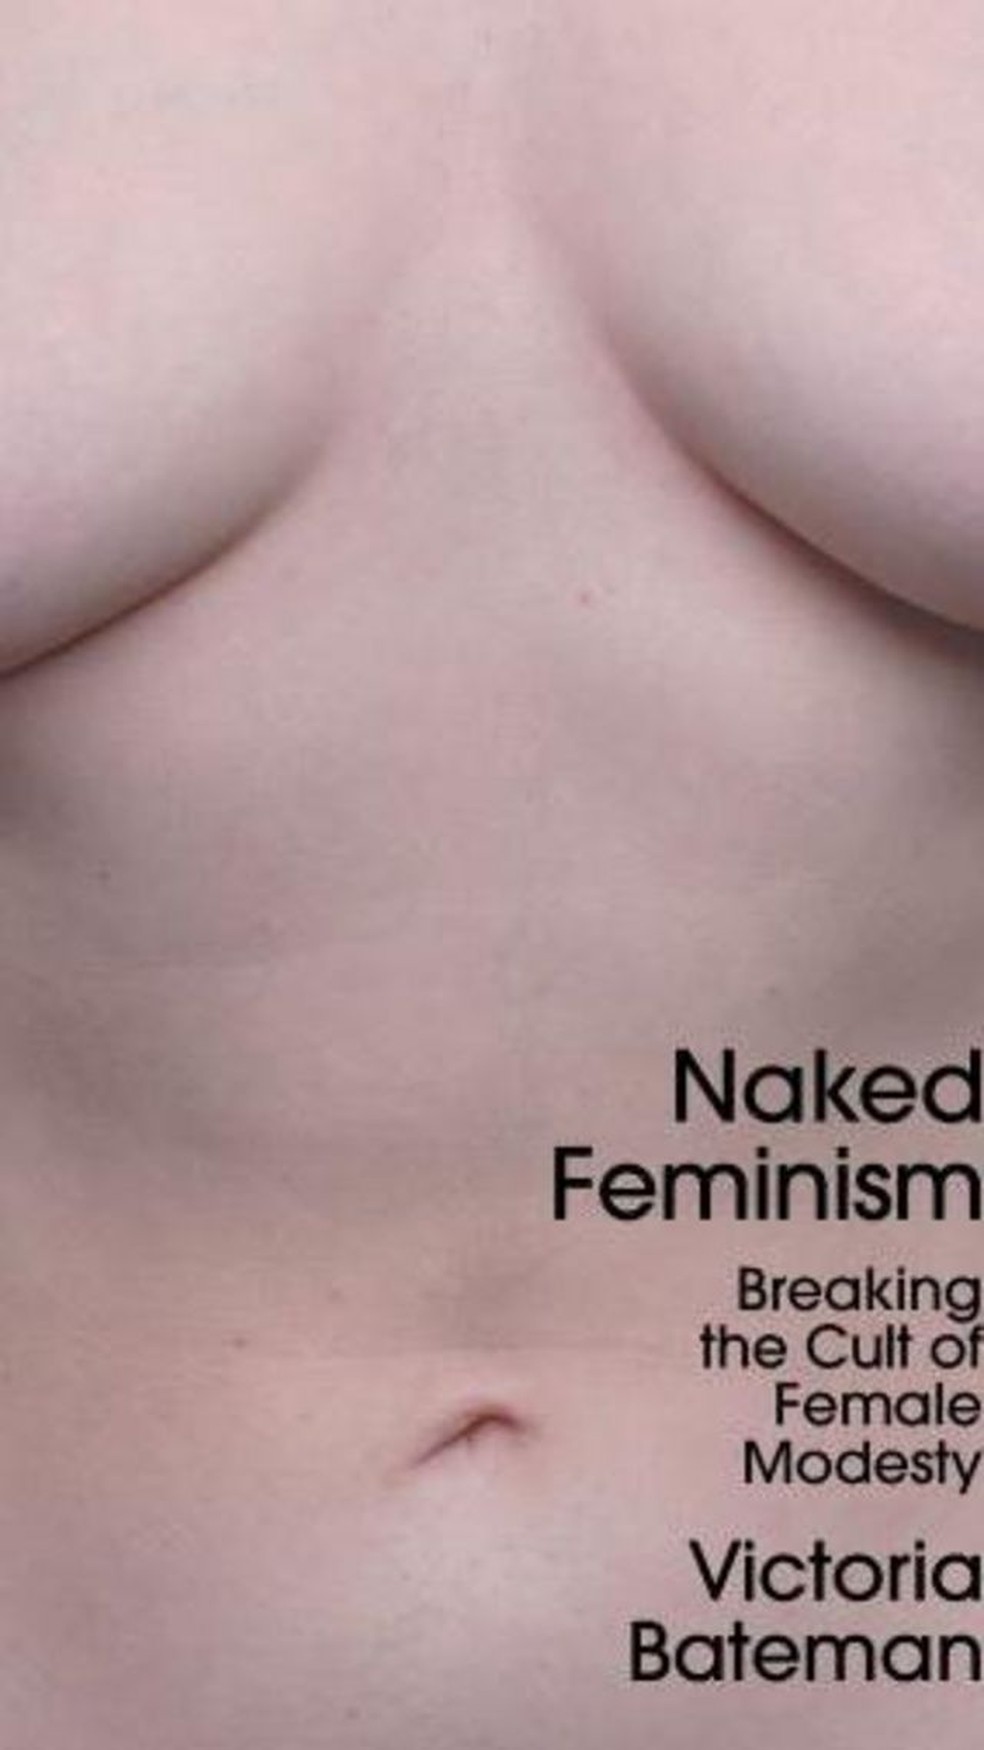 Capa do livro de Victoria Bakeman (Feminismo Nu: Quebrando o Culto da Modéstia Feminina, em tradução livre).  — Foto: Dr Victora Bakeman via BBC